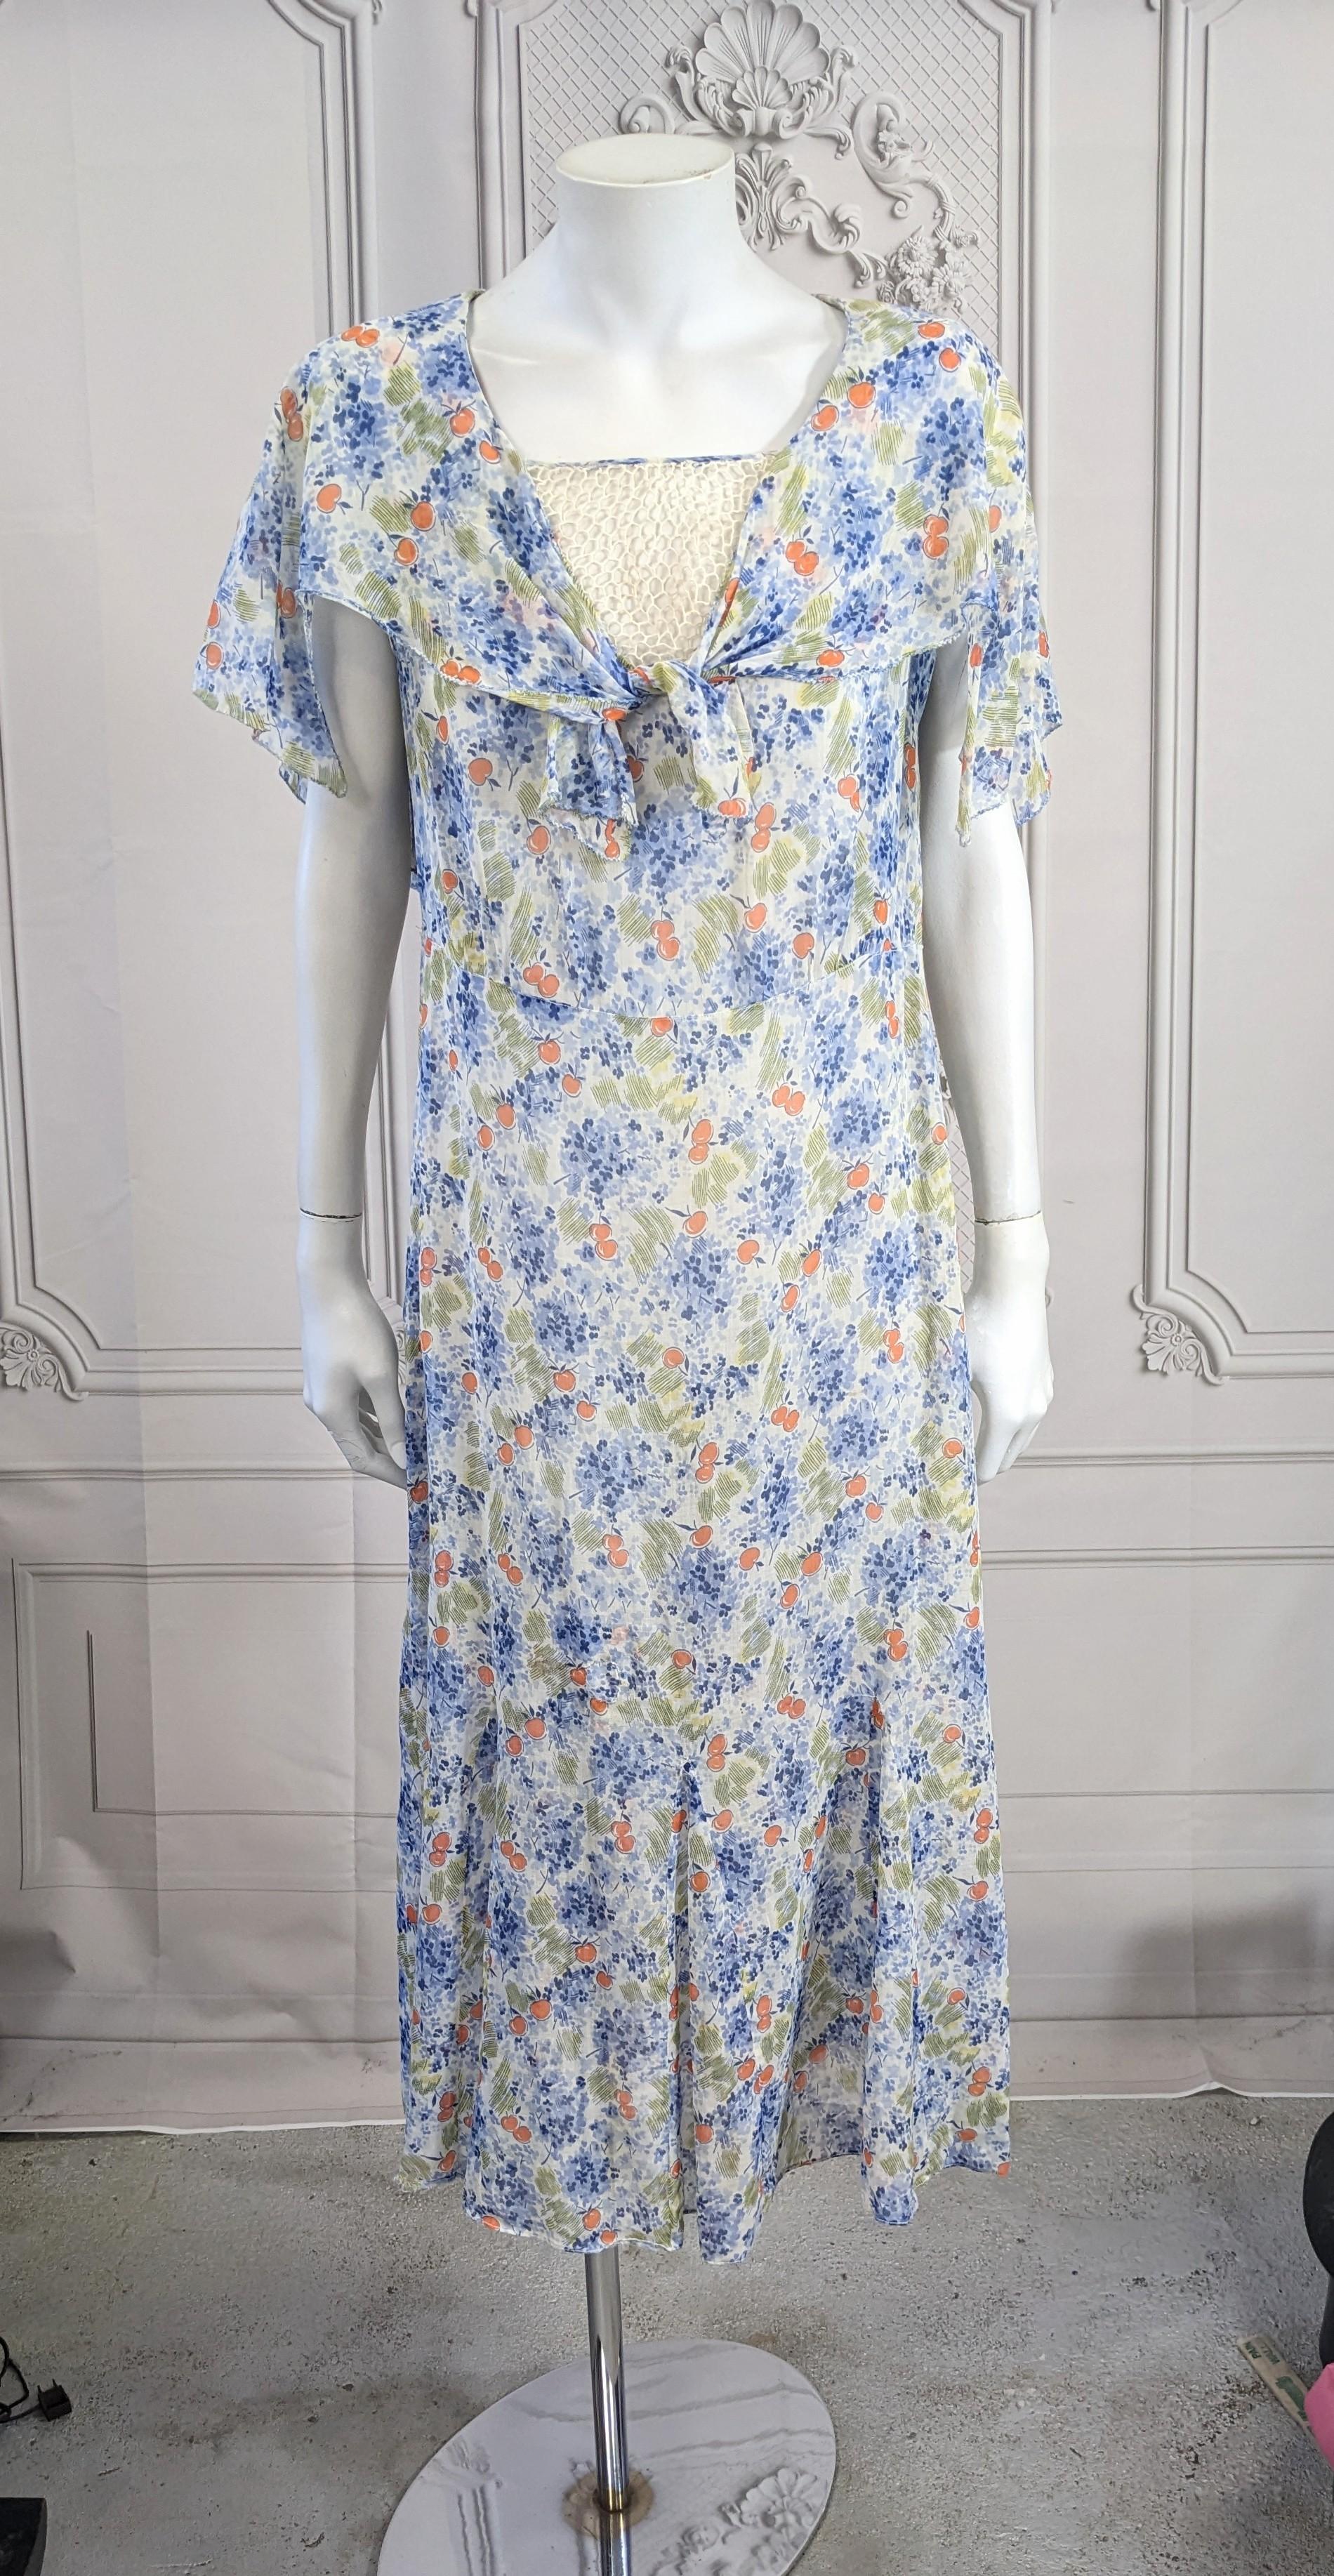 1930's Art Deco Cotton Cherry Print Day Dress mit fließendem Capelet-Kragen, der vorne gebunden wird. Am Halsausschnitt ist ein Spitzeneinsatz angebracht, der auf Wunsch aber auch entfernt werden kann. Charmanter Druck von orangefarbenen Kirschen